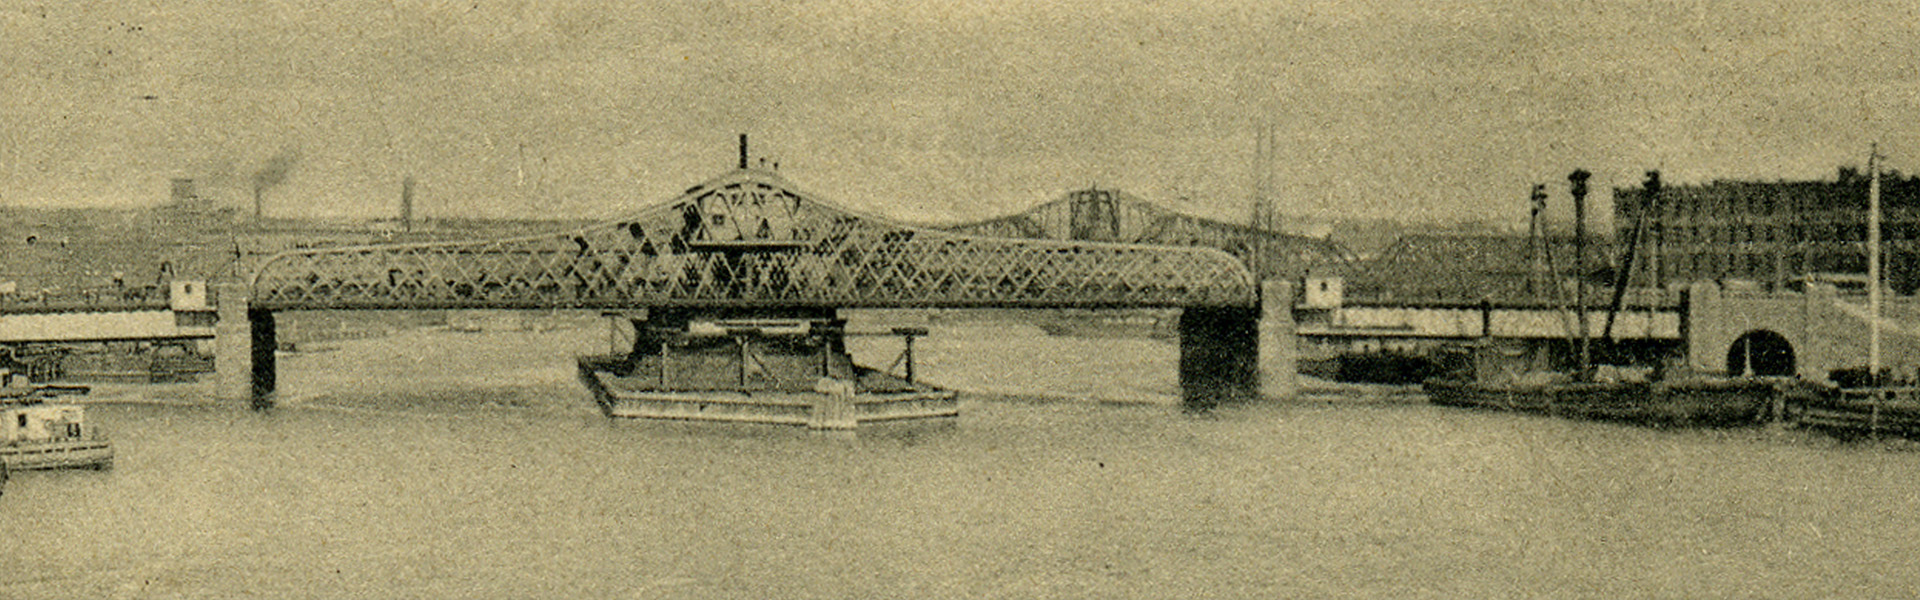 Third Avenue Bridge, 1907